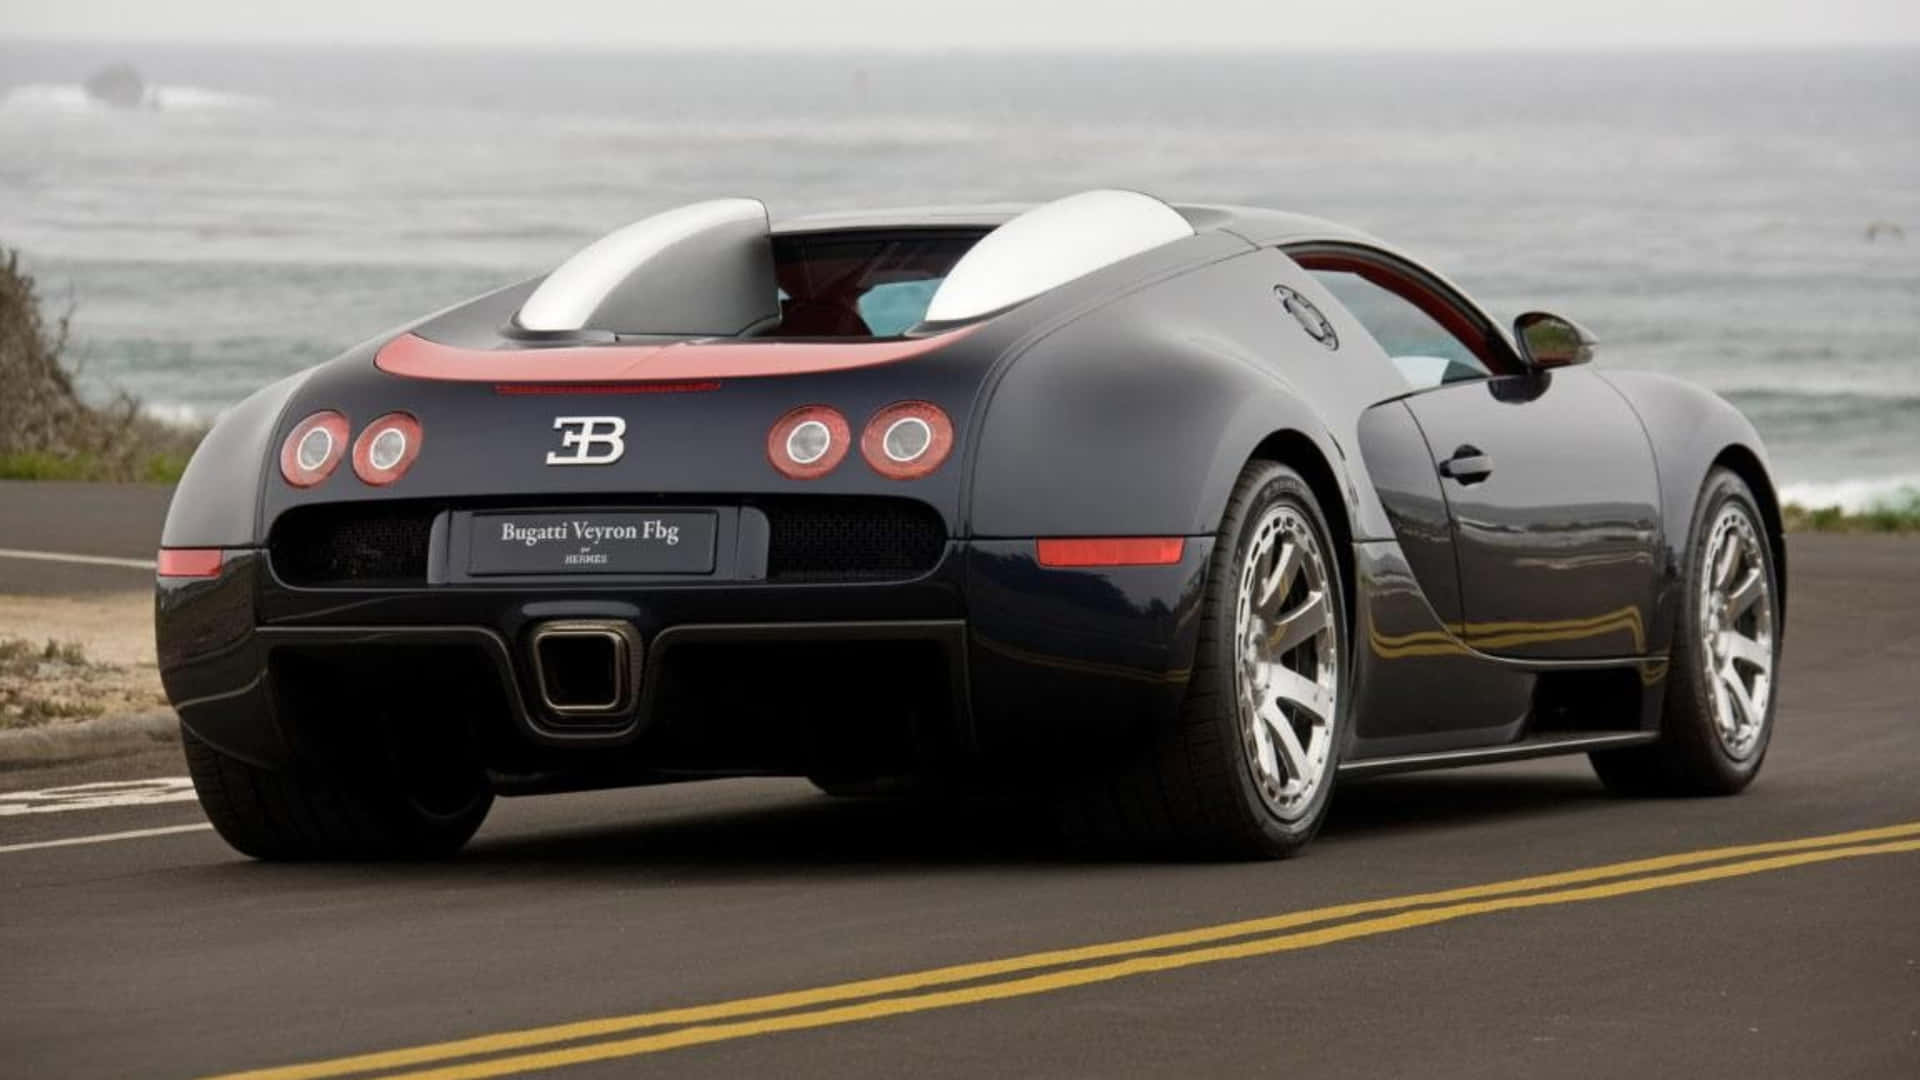 Bugattiveyron Cv - V8 (bugatti Veyron Cv - V8) Wallpaper